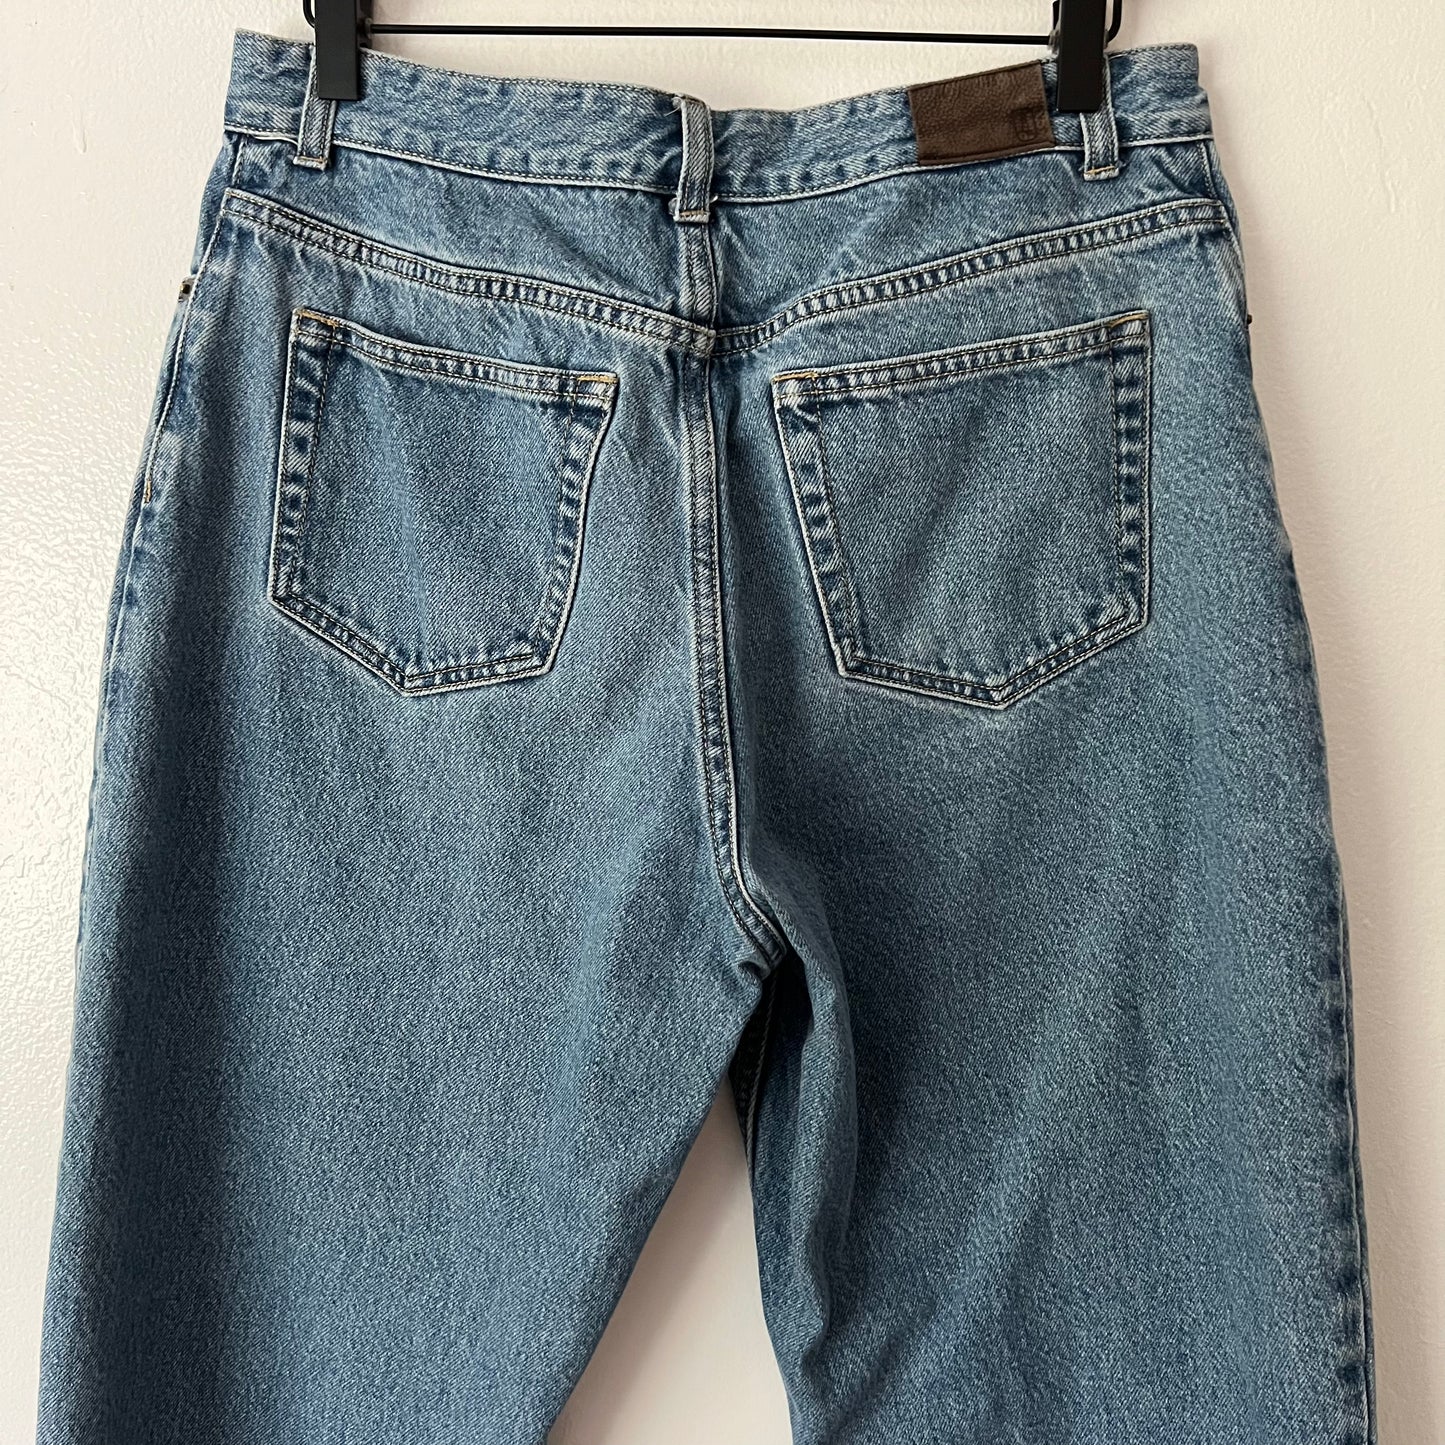 Land’s End Vintage Mom Jeans